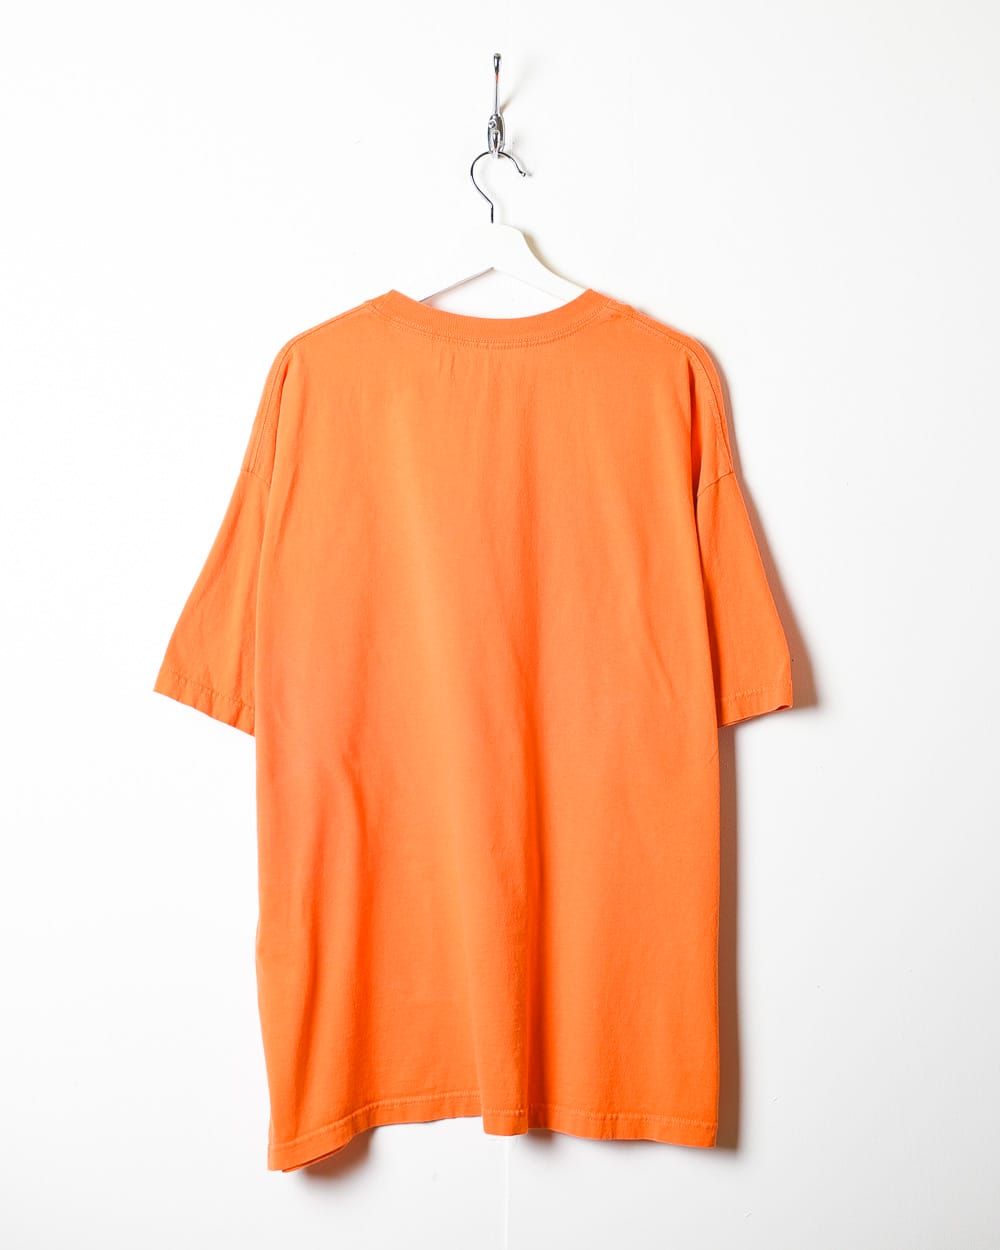 Orange Nike T-Shirt - XX-Large